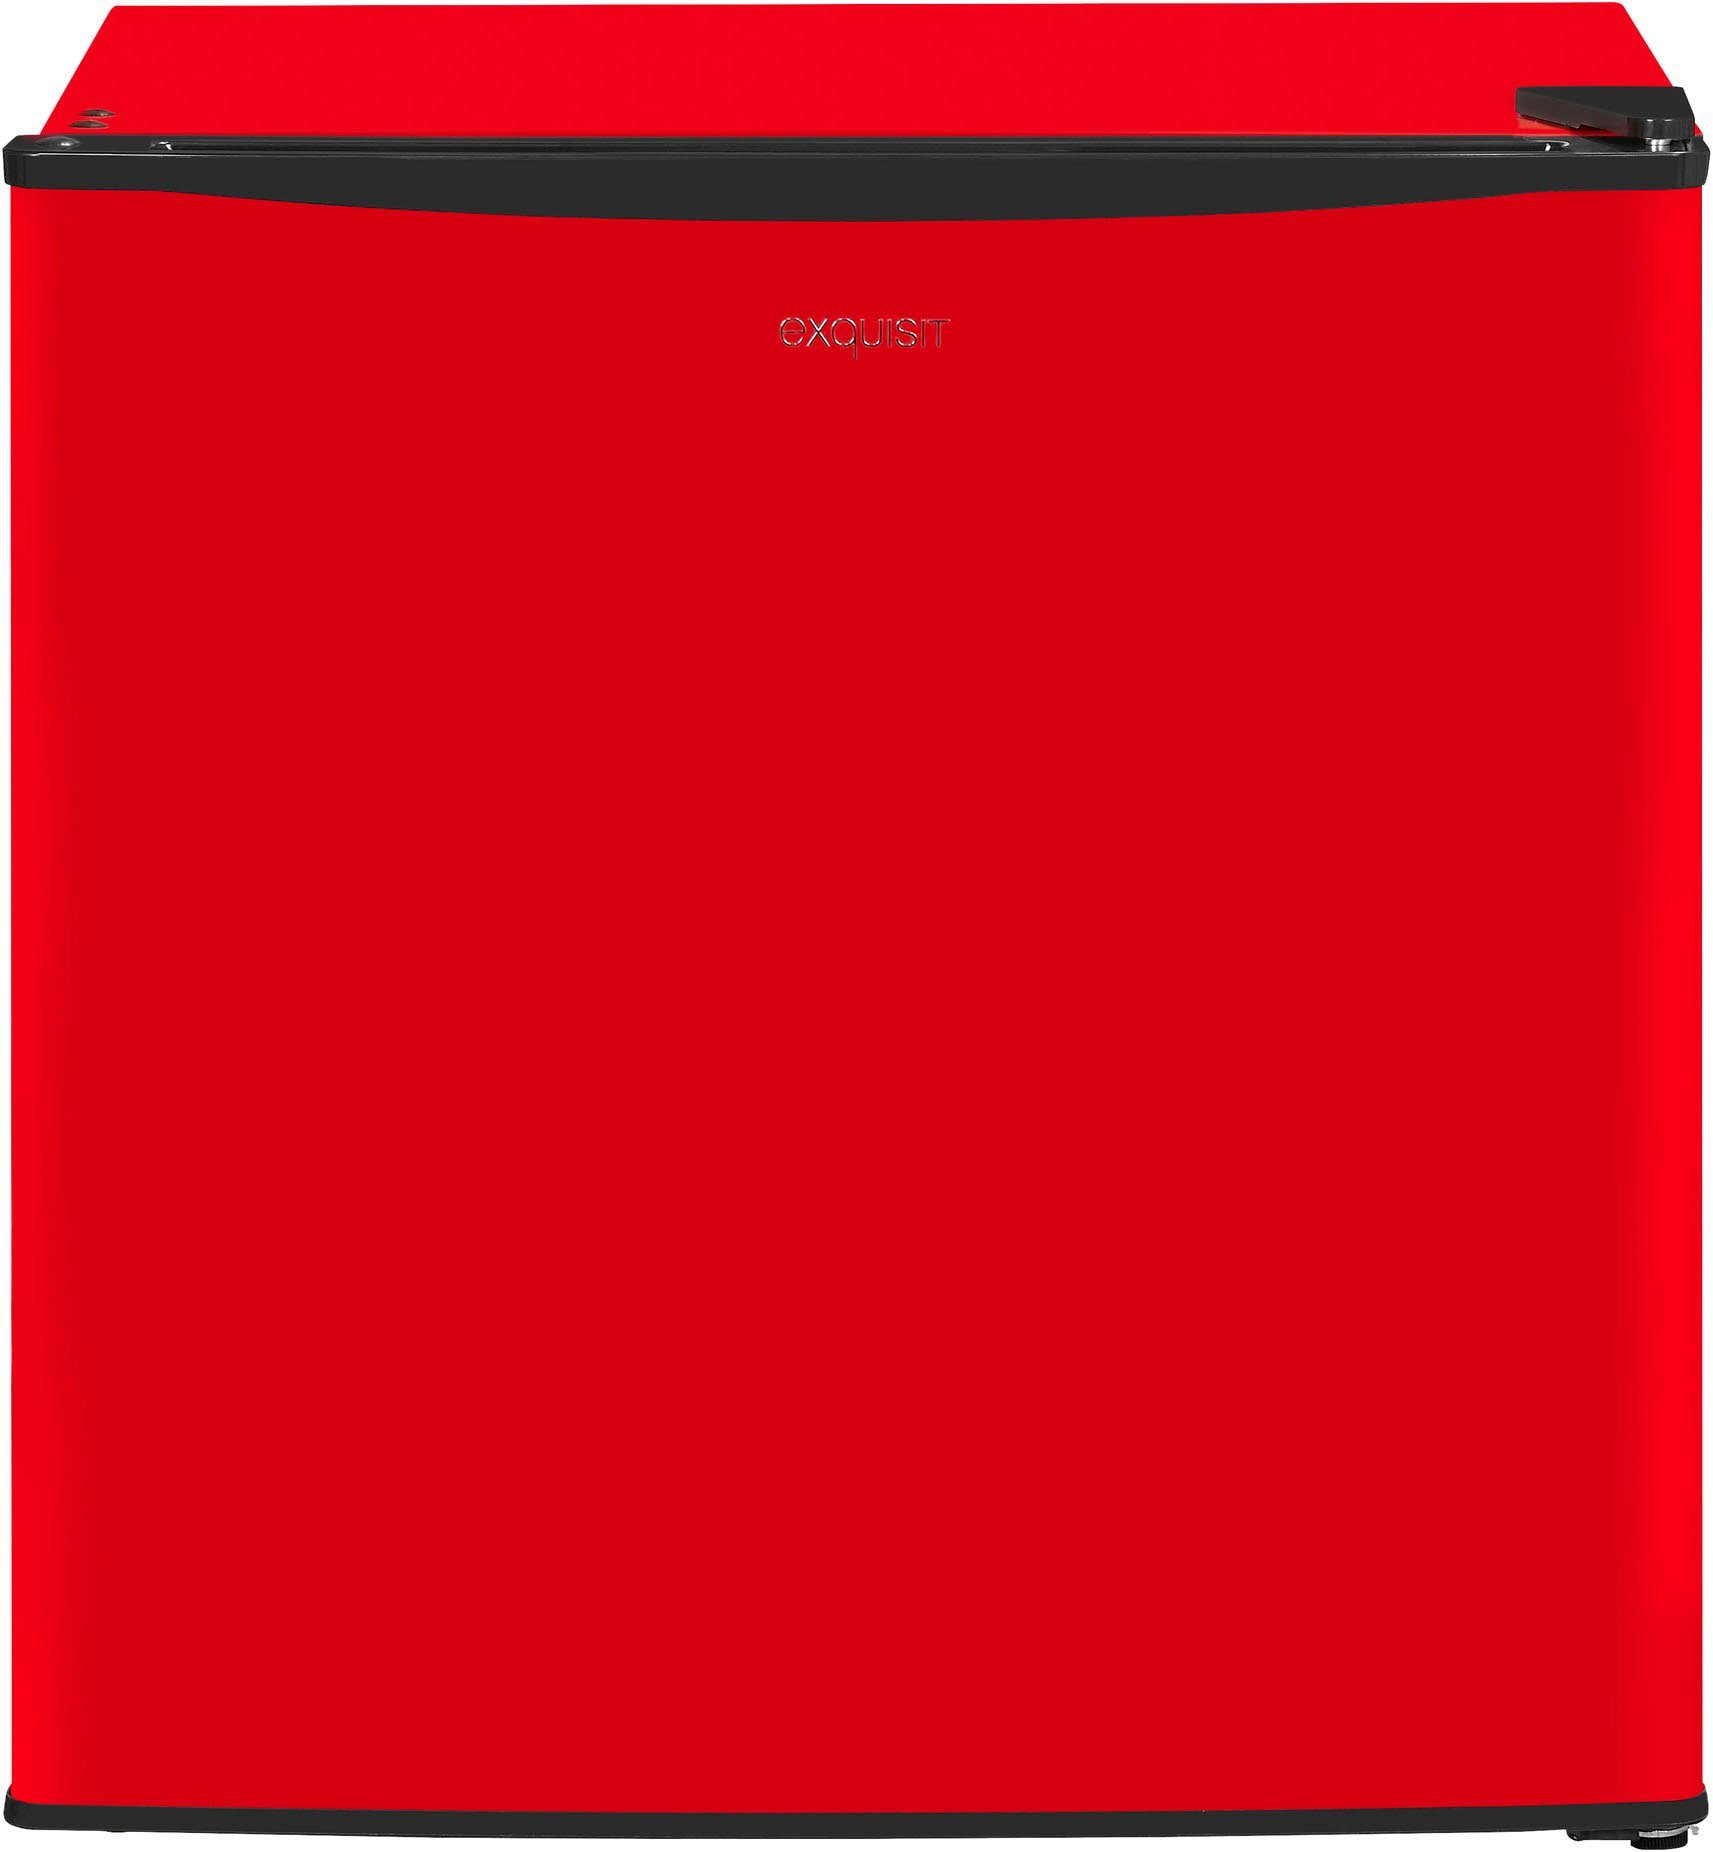 51 exquisit cm cm GB40-150E Gefrierschrank hoch, rot, breit 47